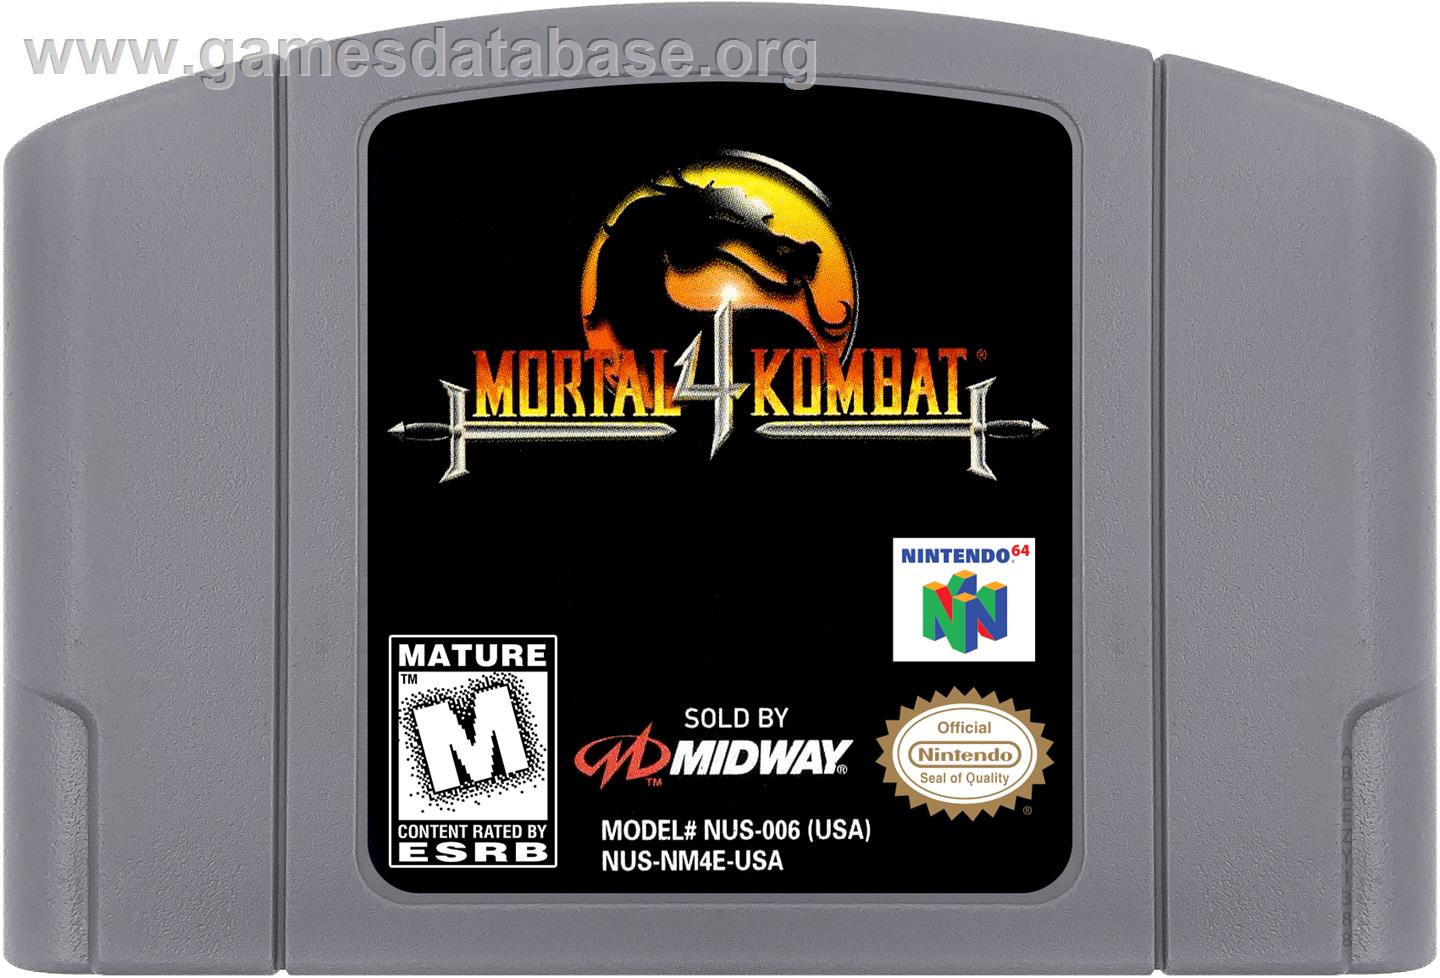 Mortal Kombat 4 - Nintendo N64 - Artwork - Cartridge